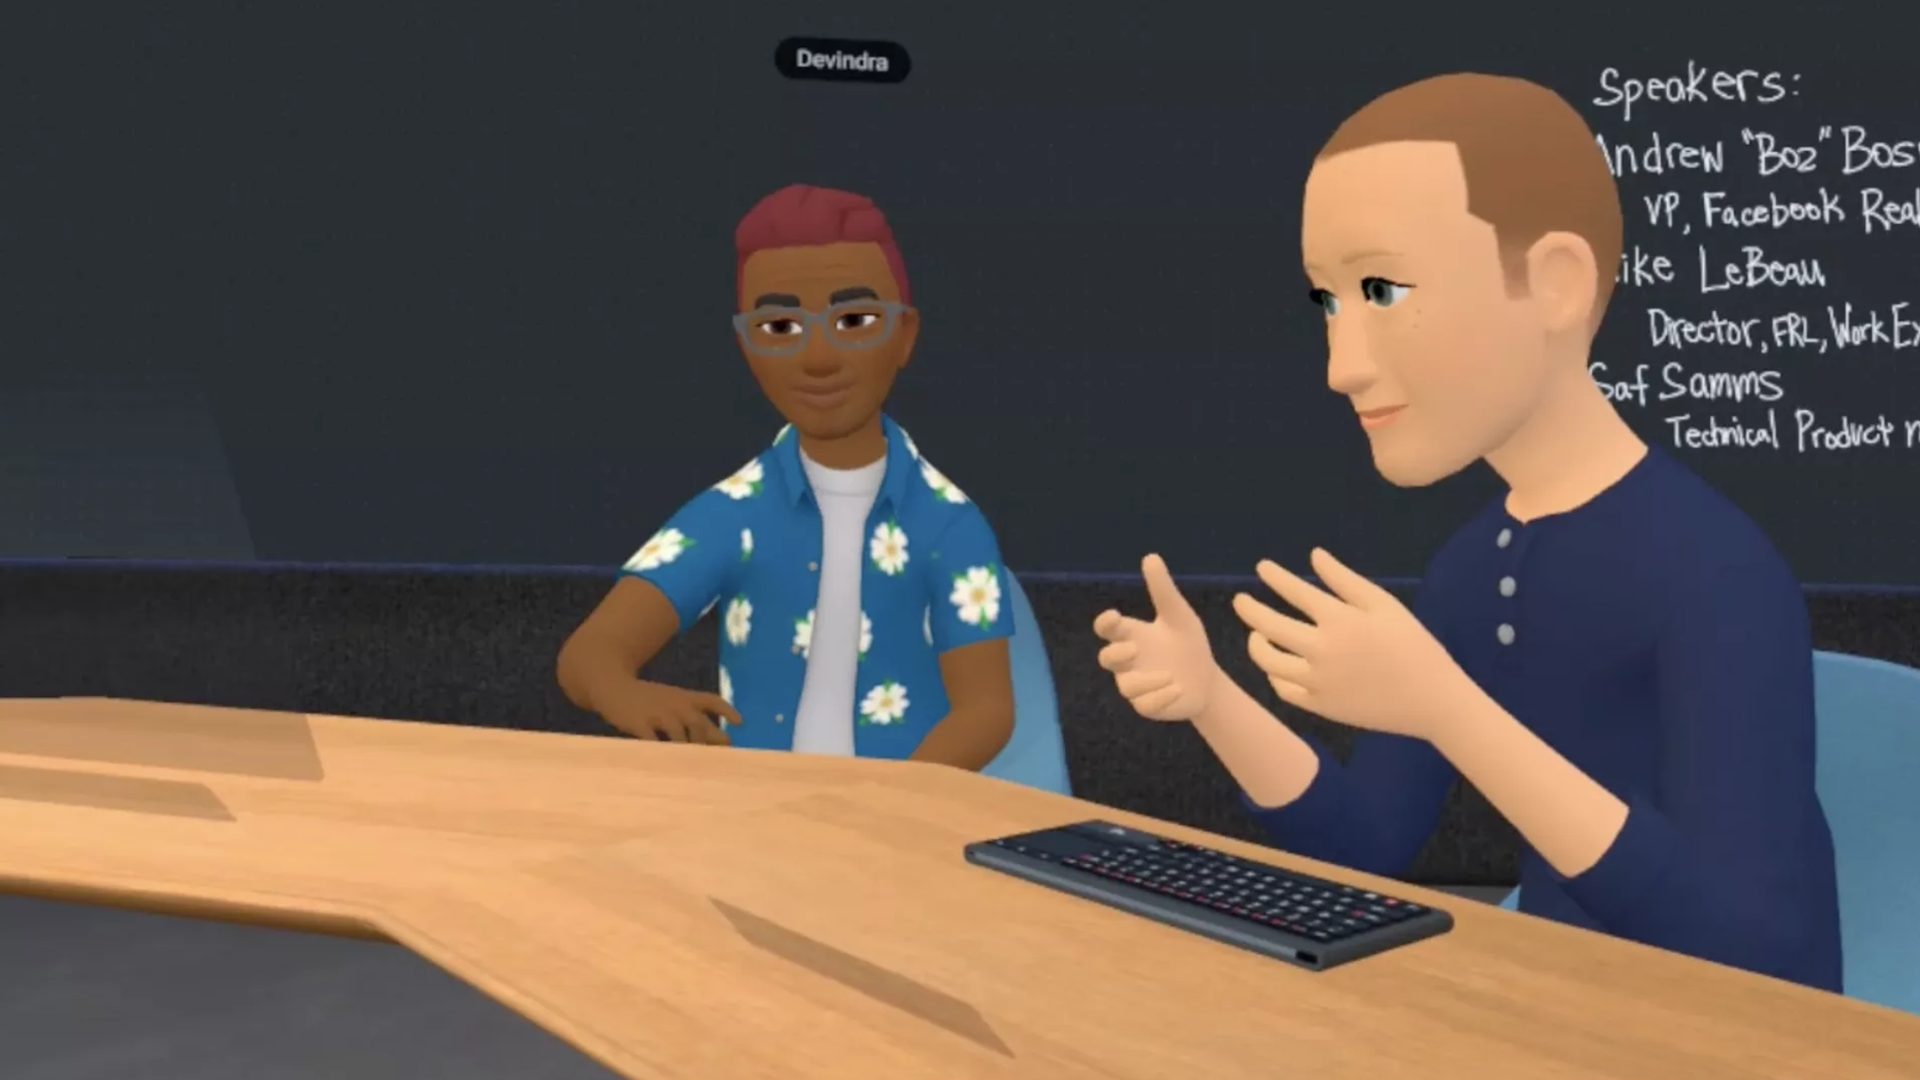 Screenshot of people as digital avatars speaking in a virtual room